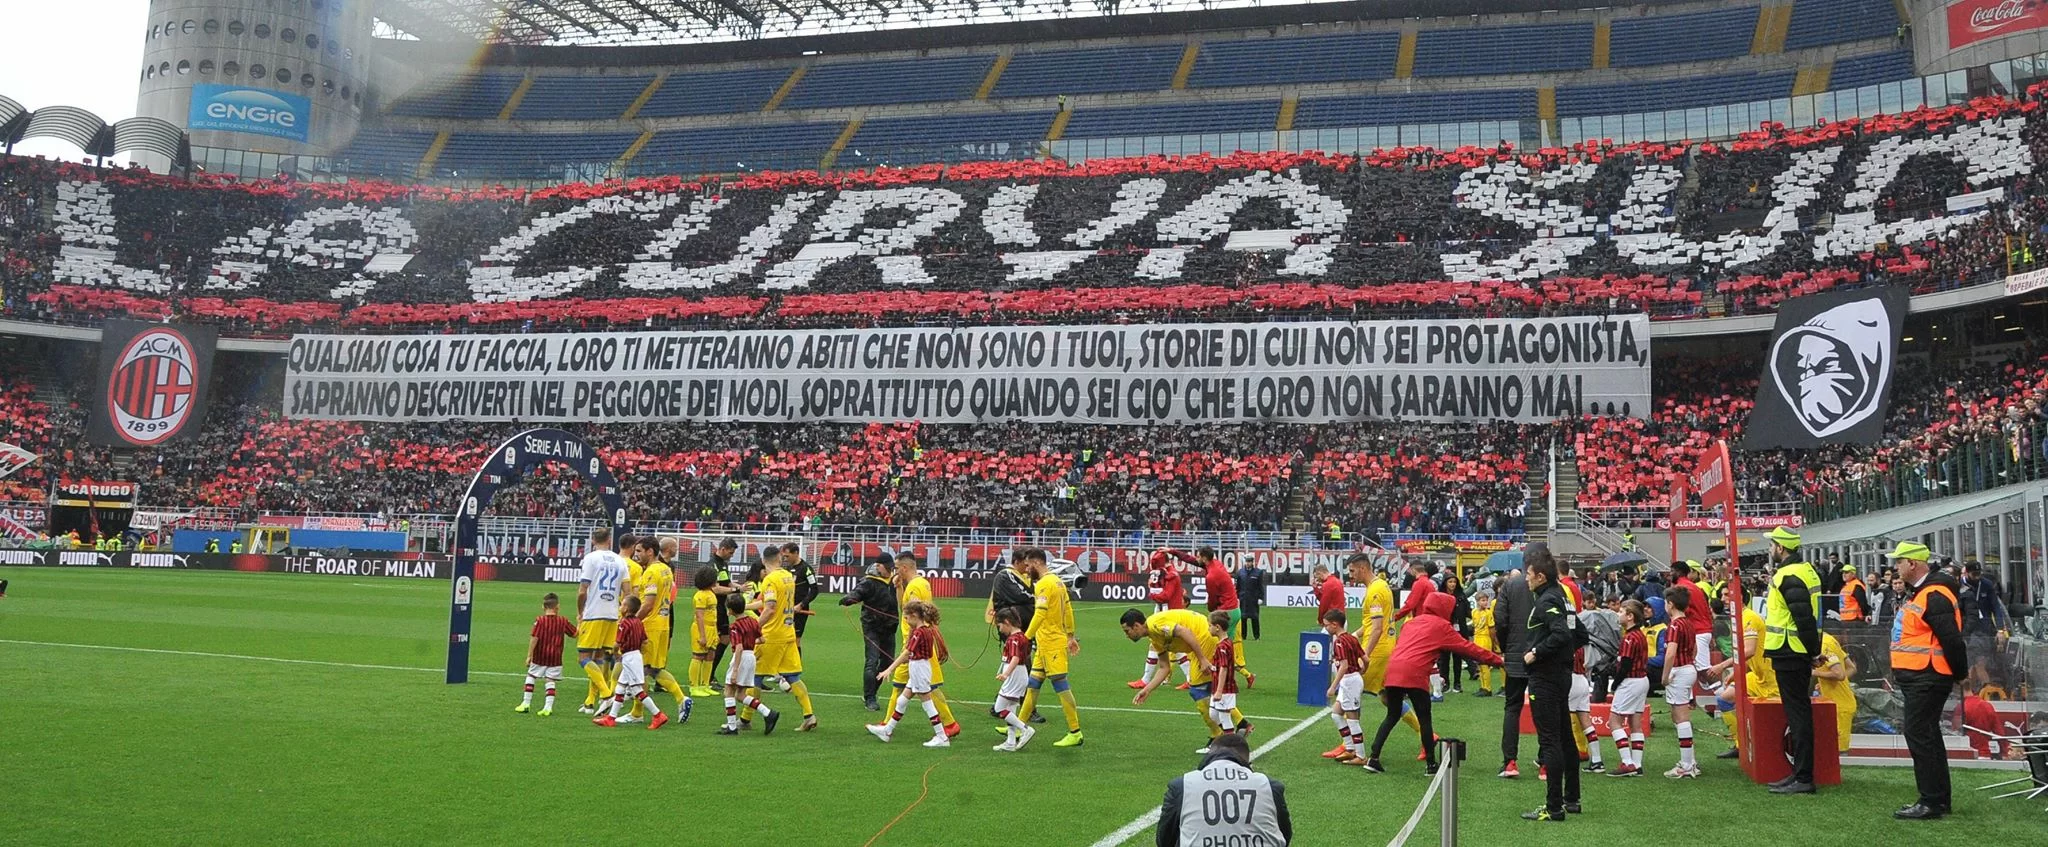 Curva Sud: “Per questa gente che ama il Milan follemente”